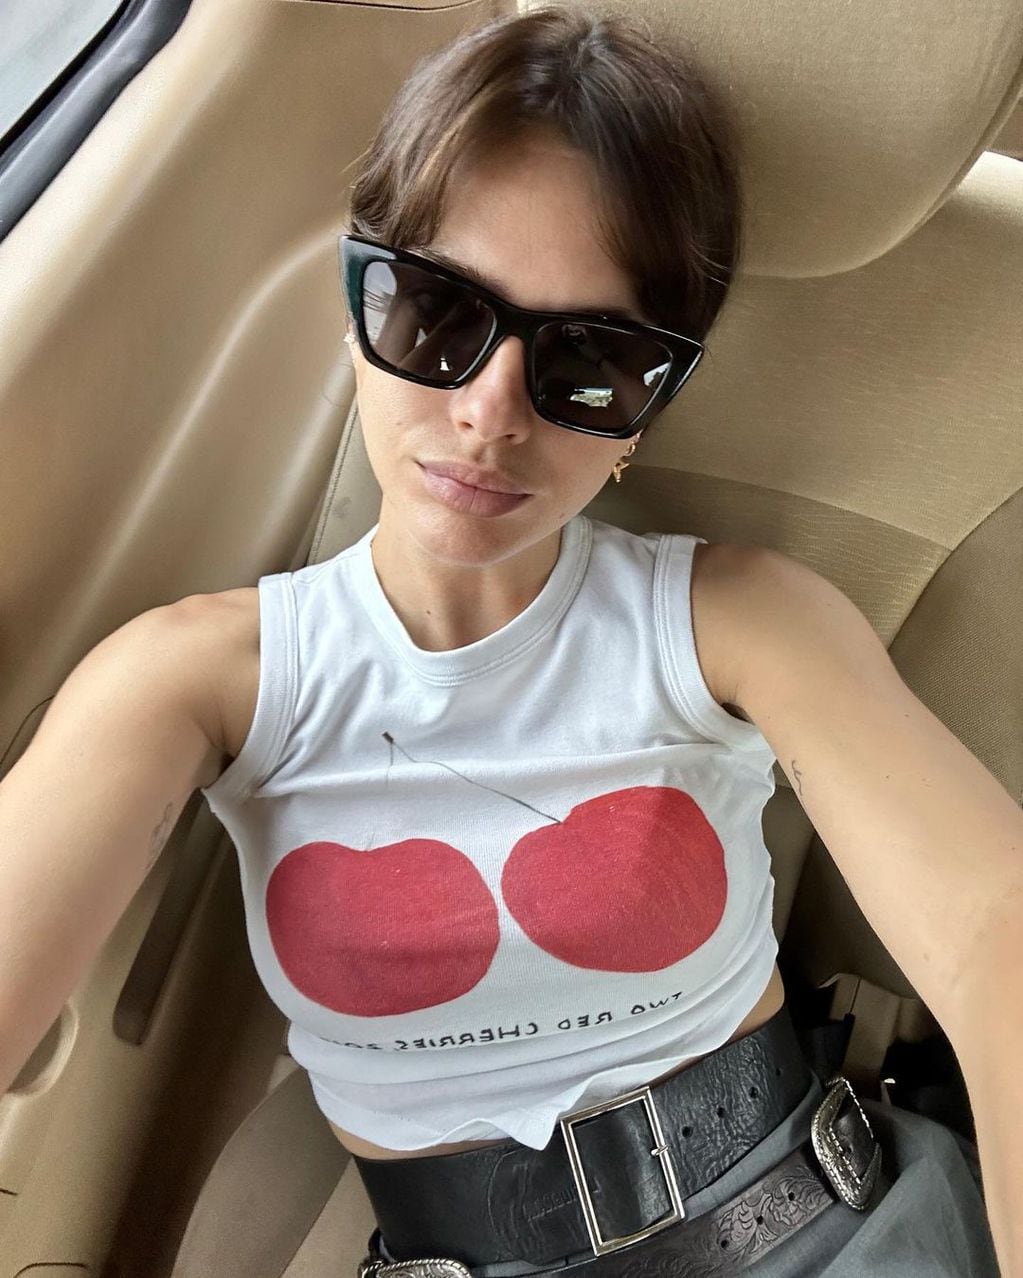 La China Suárez posó para Instagram desde un avión privado y la compararon con Wanda Nara